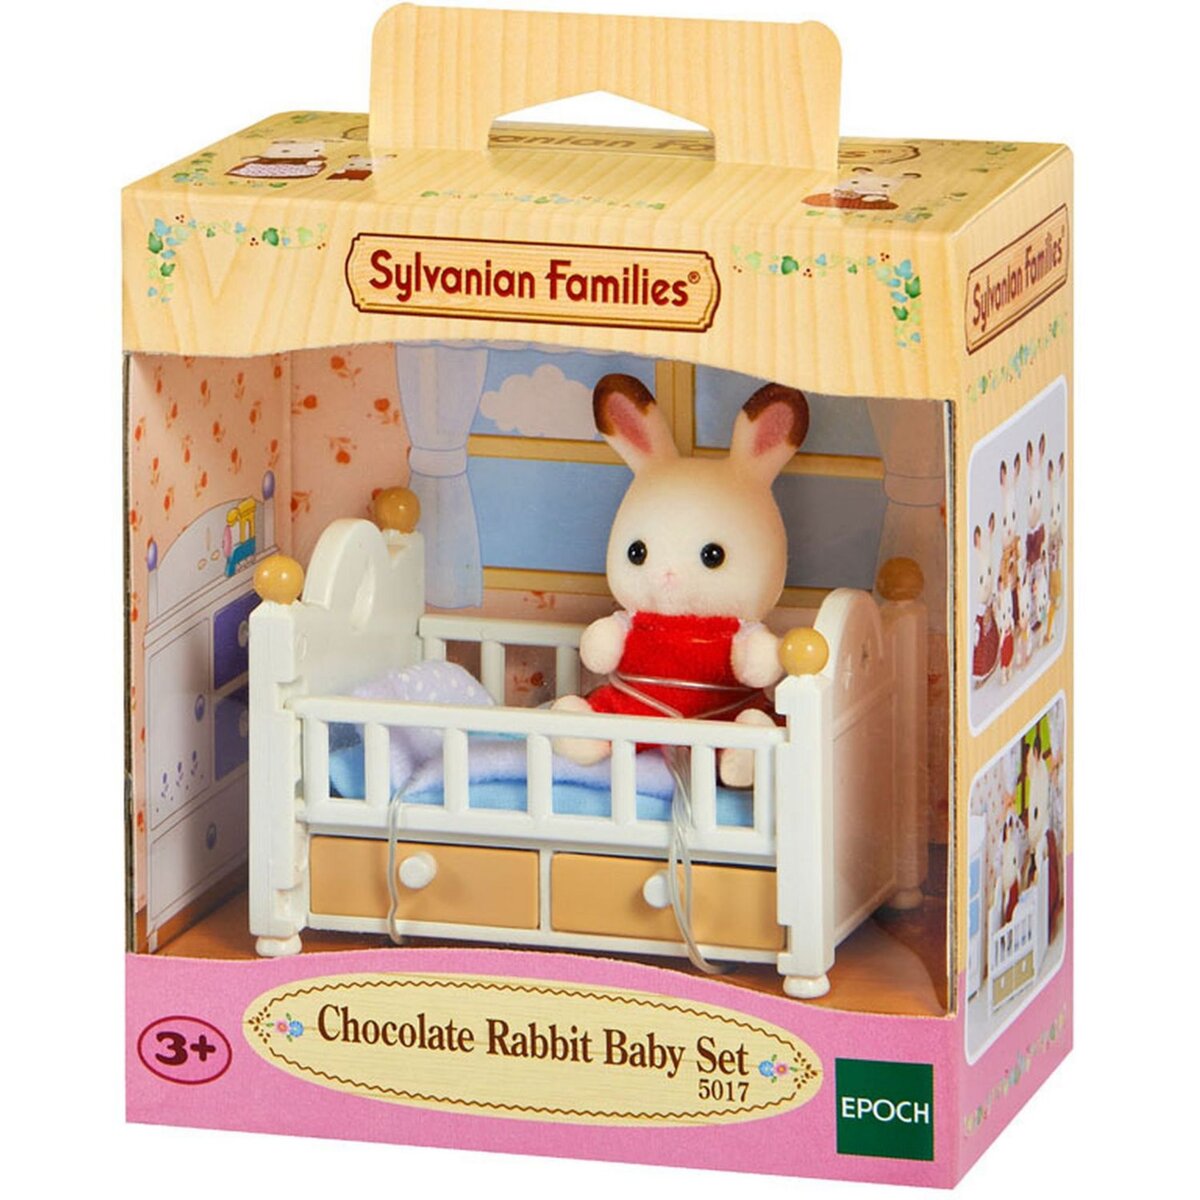 Sylvanian families 5017 - Bébé lapin chocolat avec lit - Sylvanian